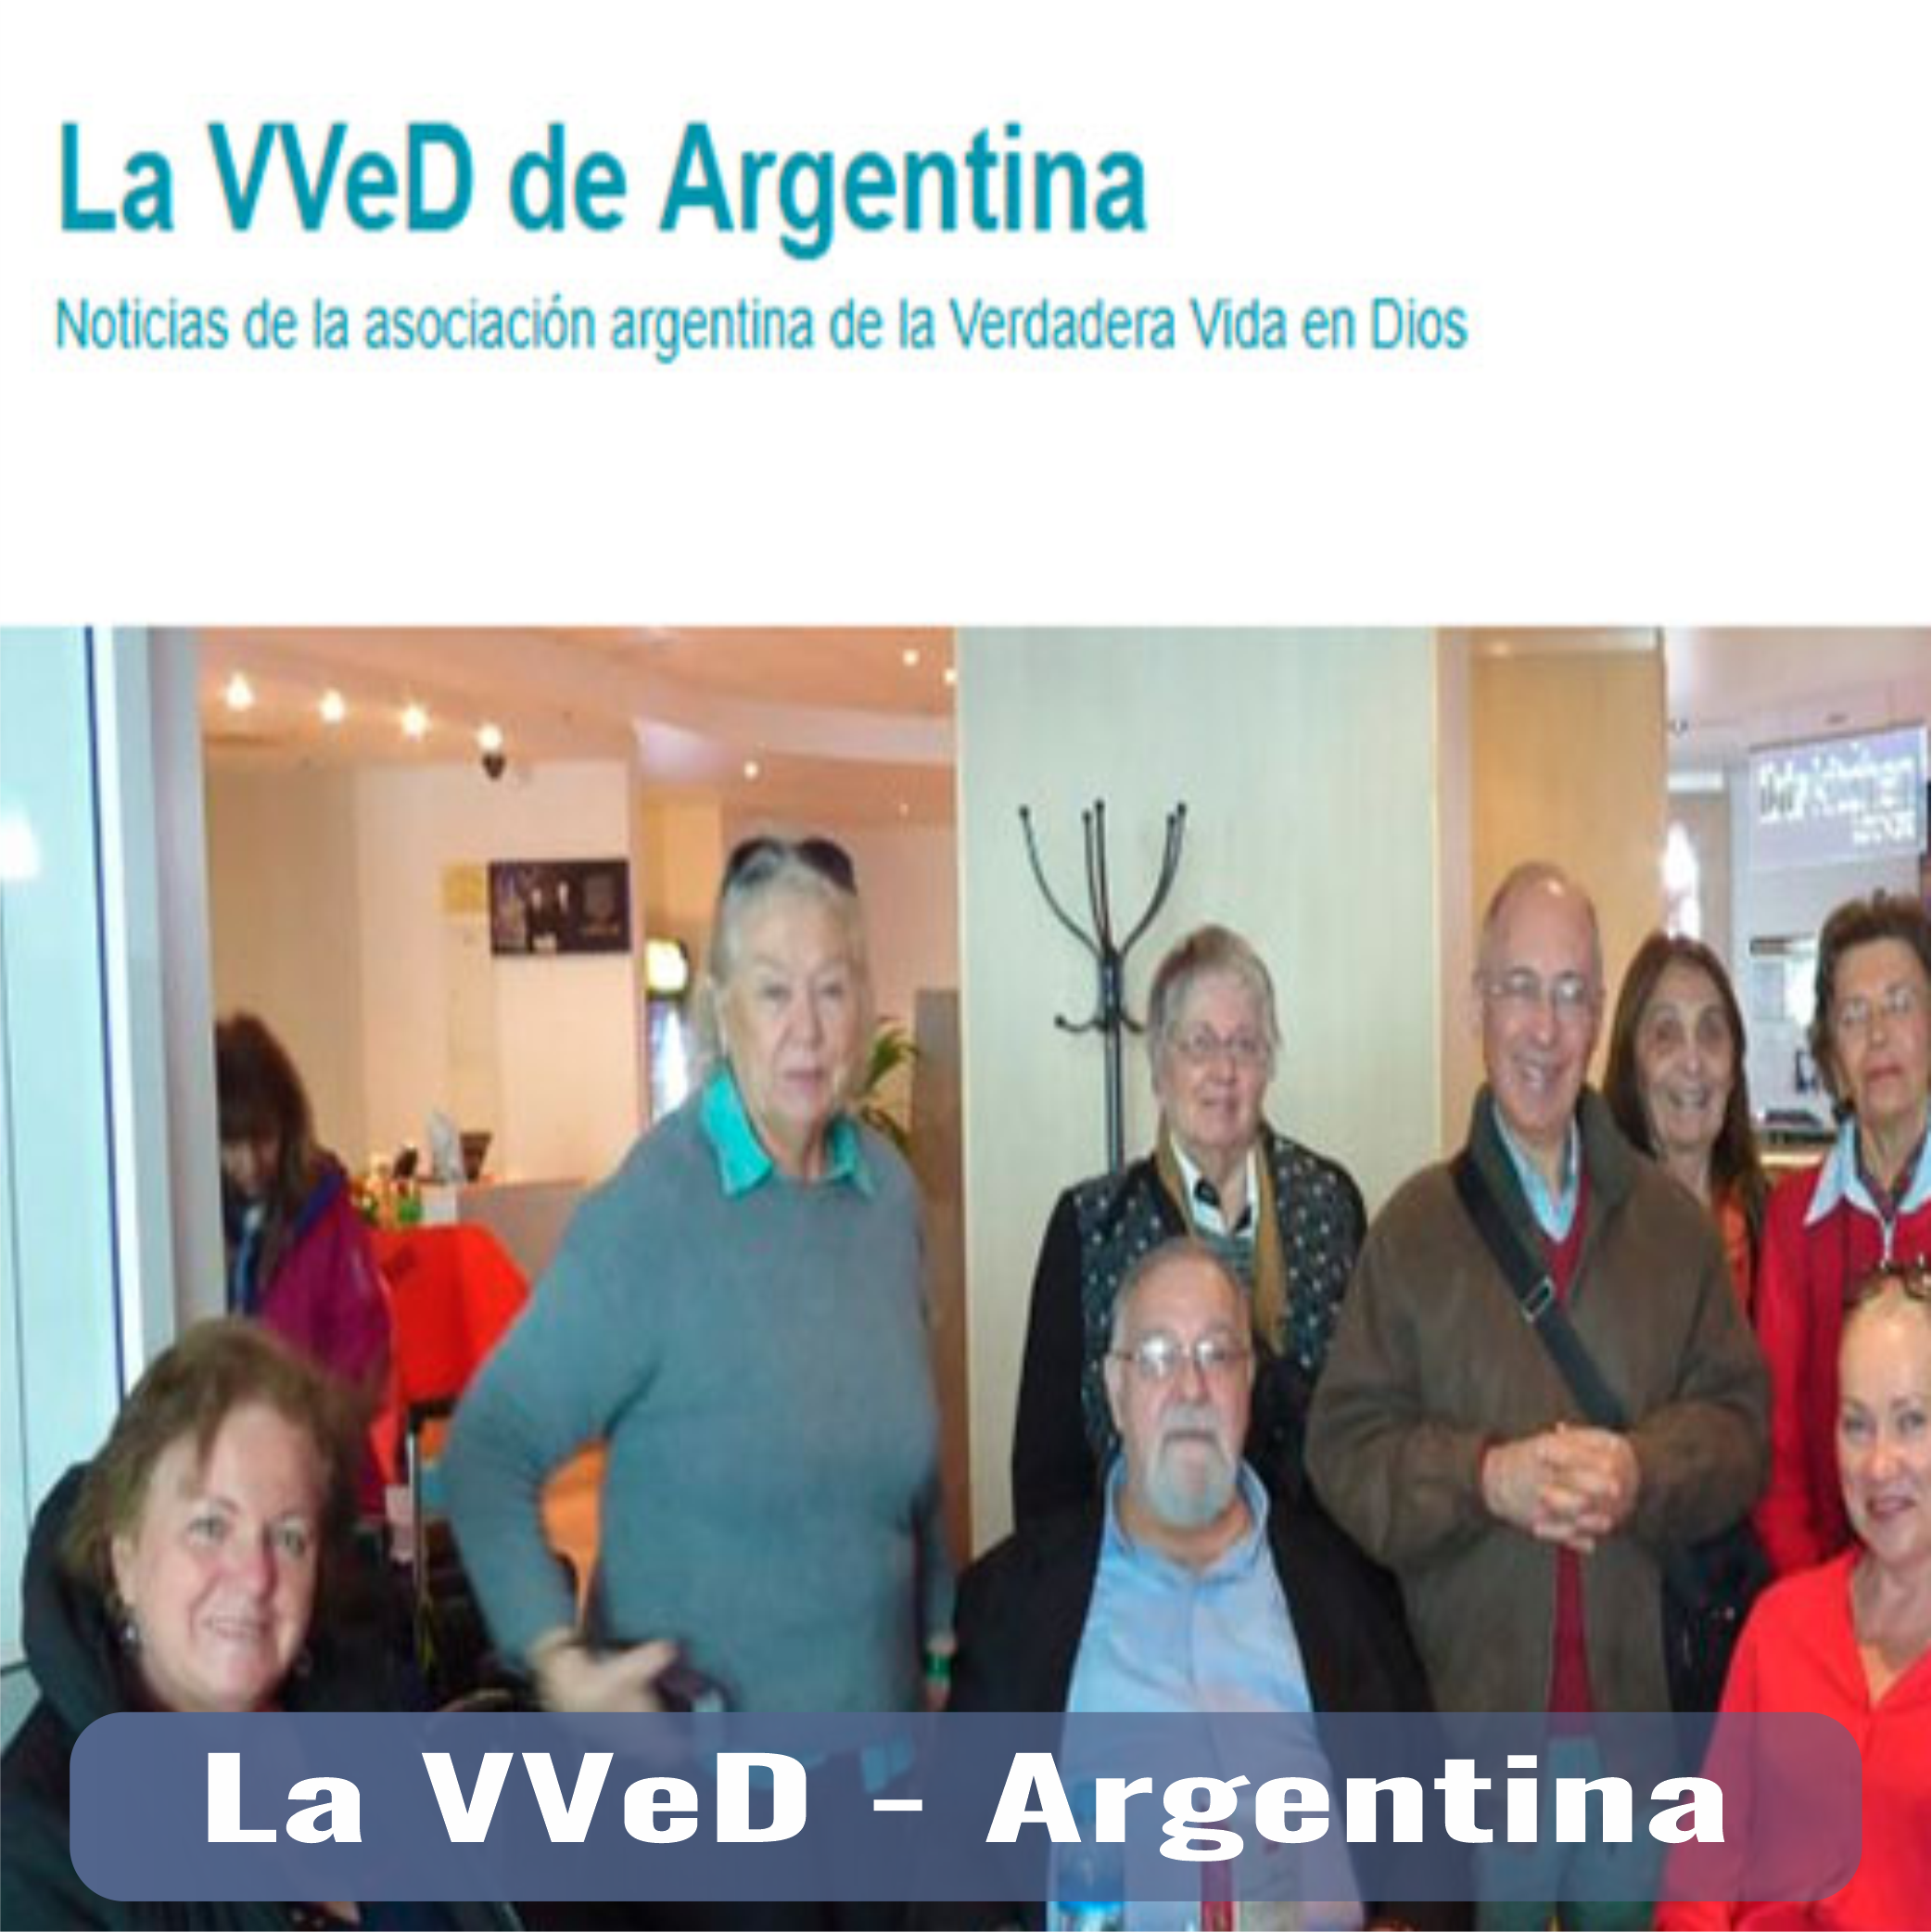 VVed Argentina